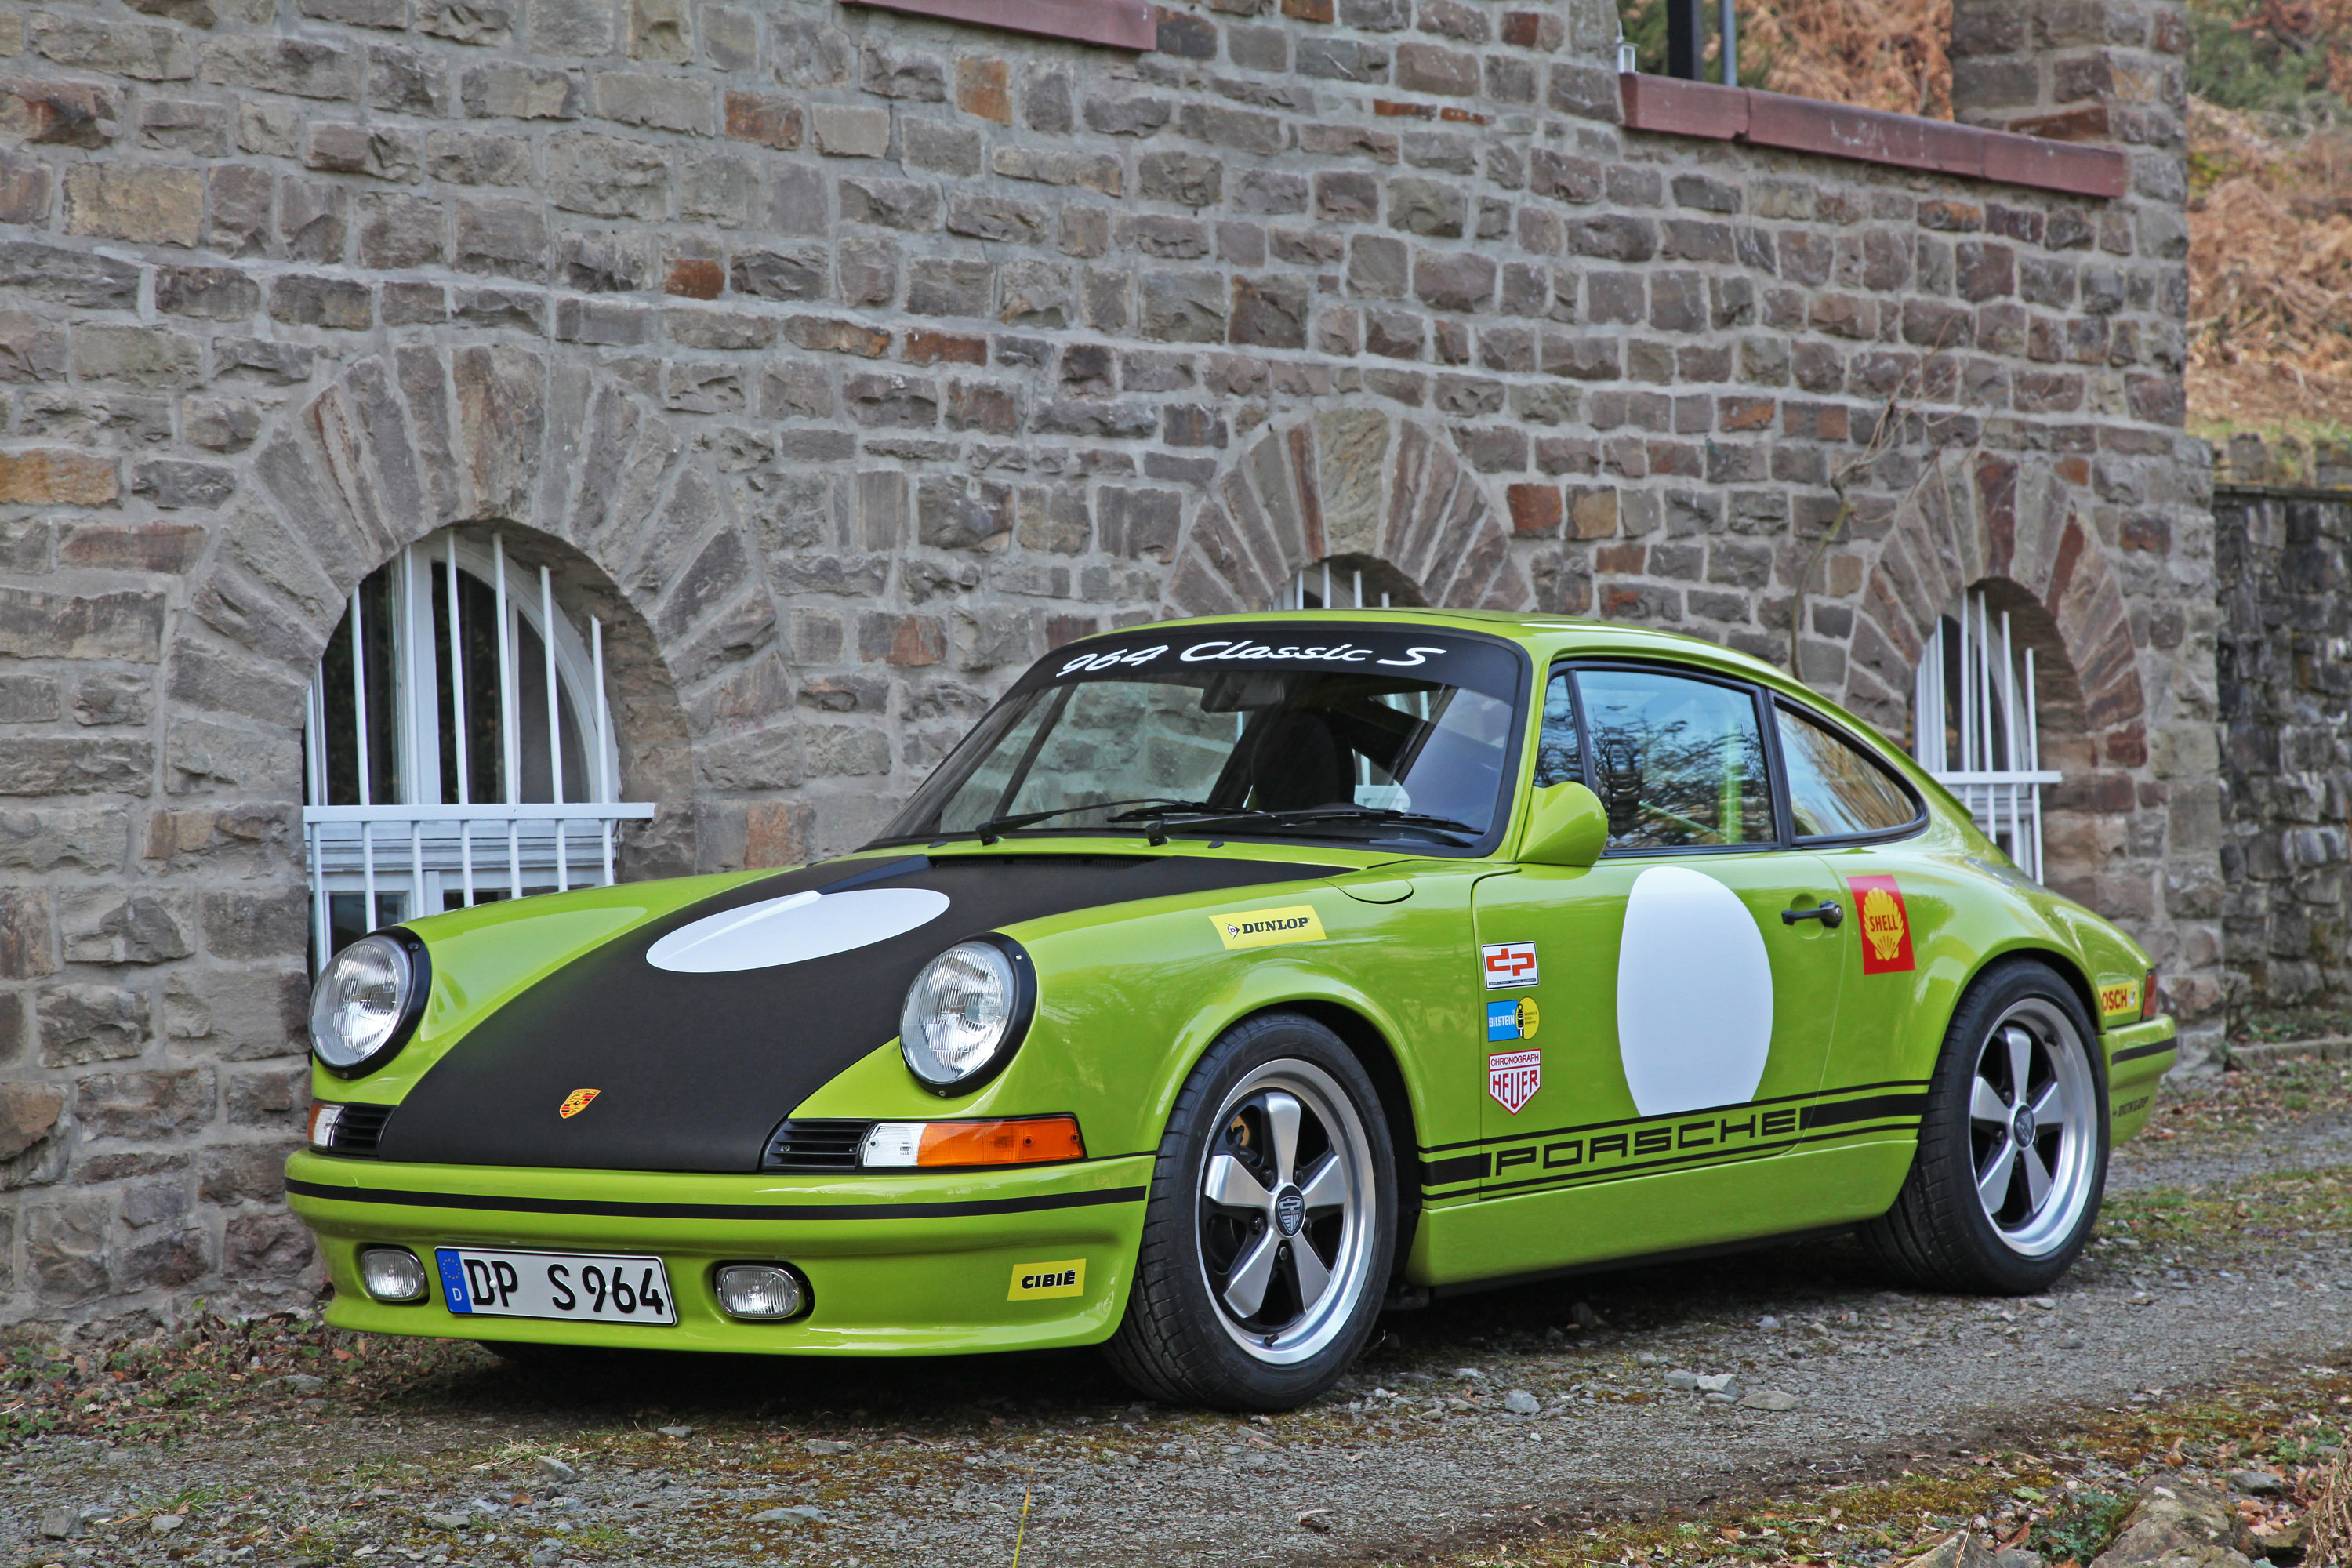 4K Porsche 911 desktop Wallpaper